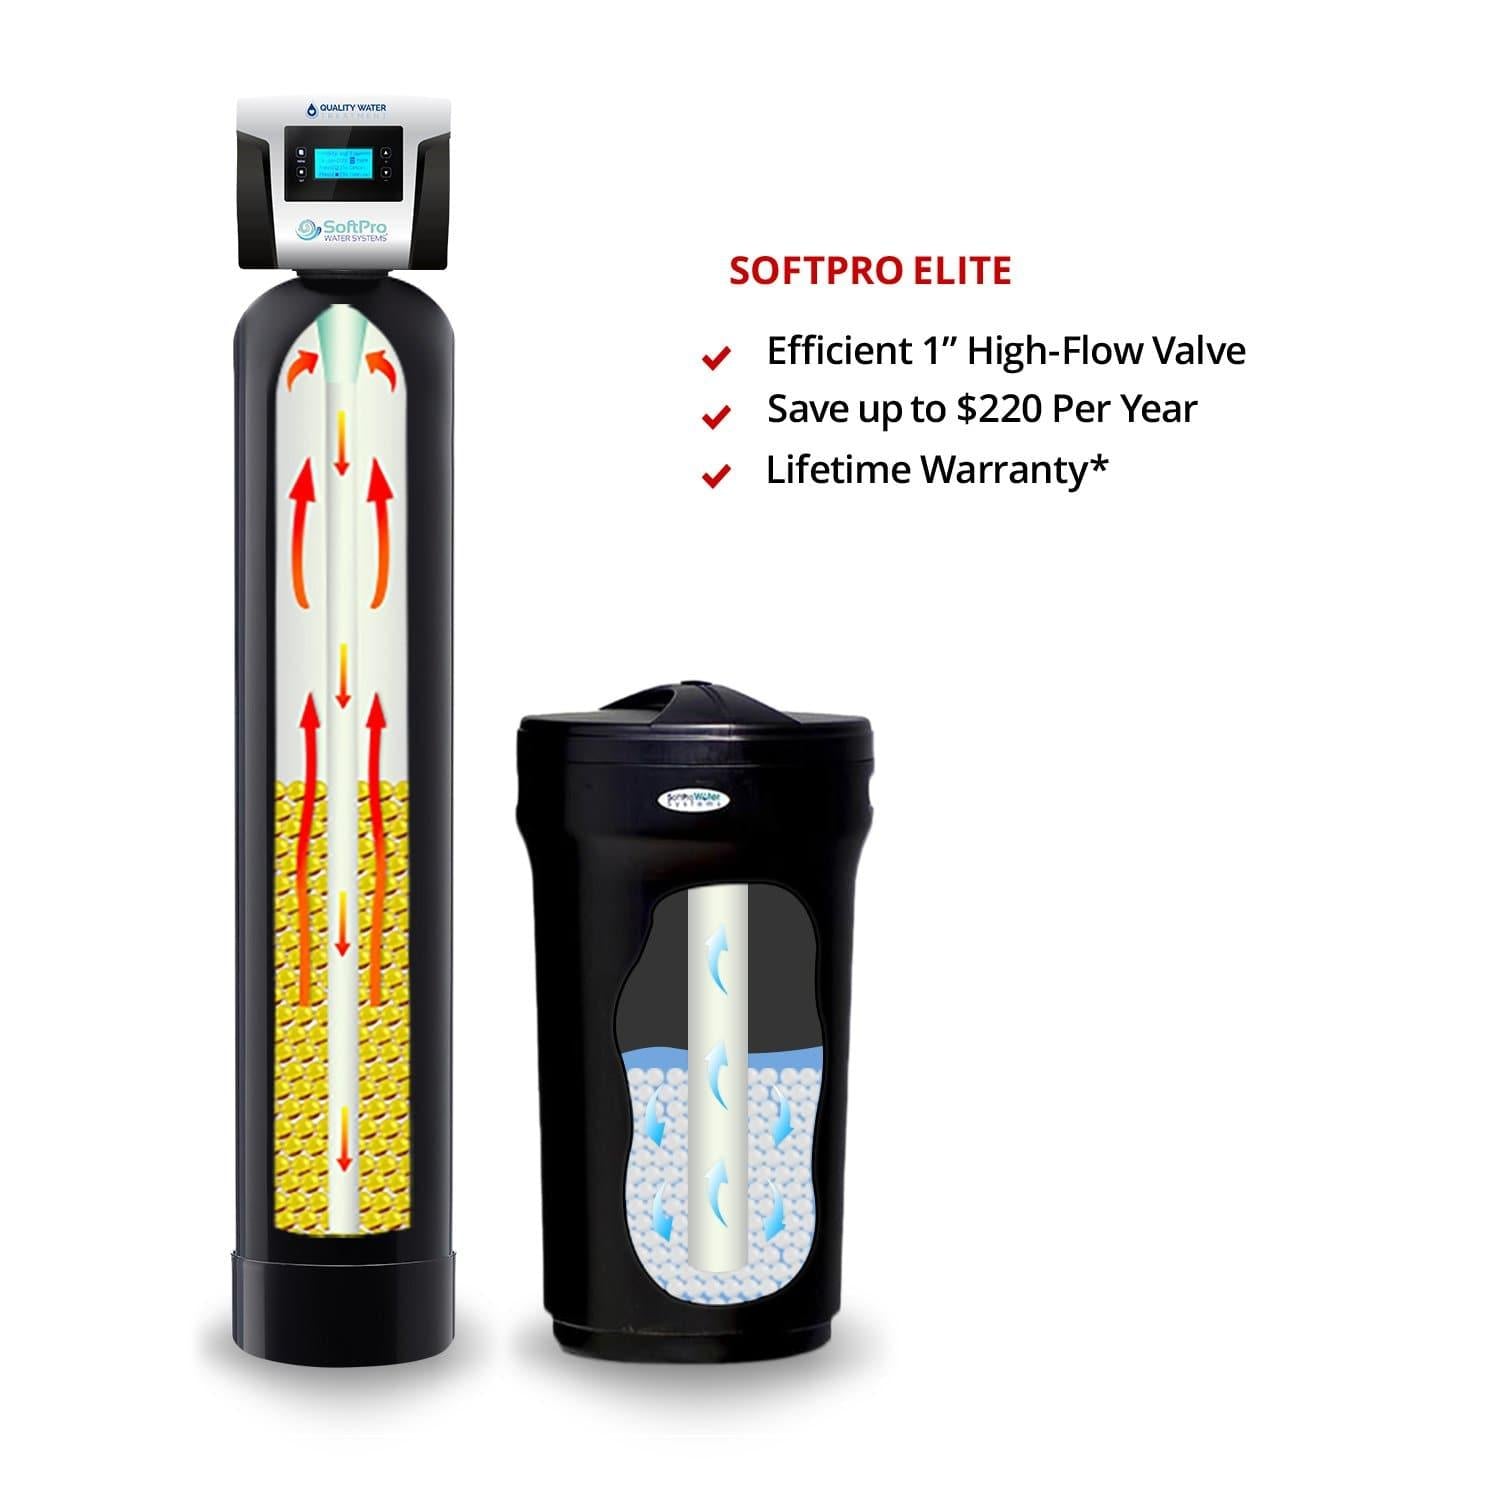 SoftPro® Elite High-Efficiency City Water Softeners (Best Seller & Lifetime Warranty)